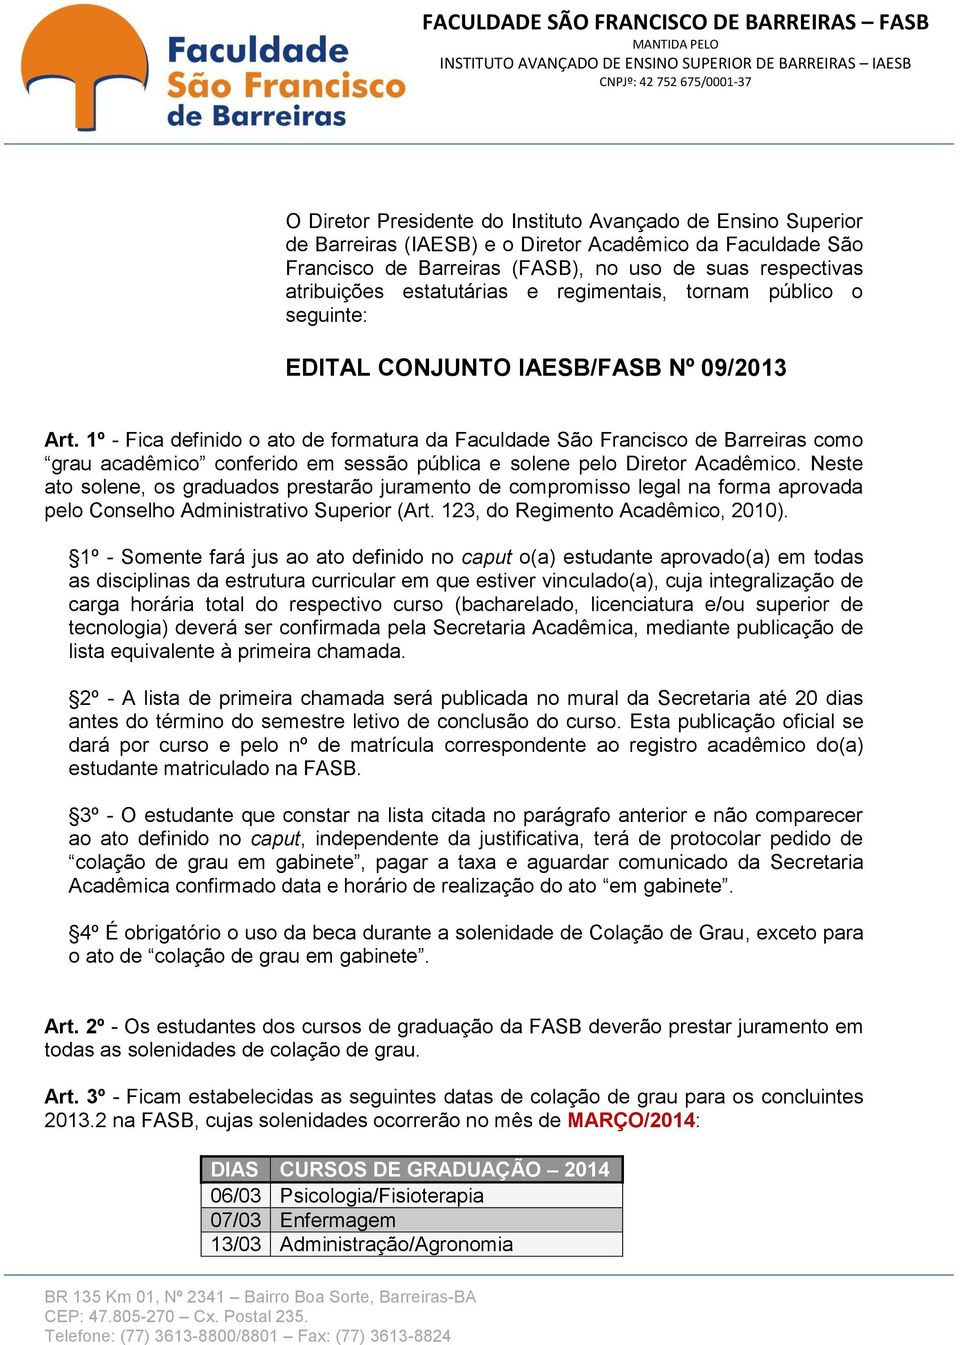 1º - Fica definido o ato de formatura da Faculdade São Francisco de Barreiras como grau acadêmico conferido em sessão pública e solene pelo Diretor Acadêmico.